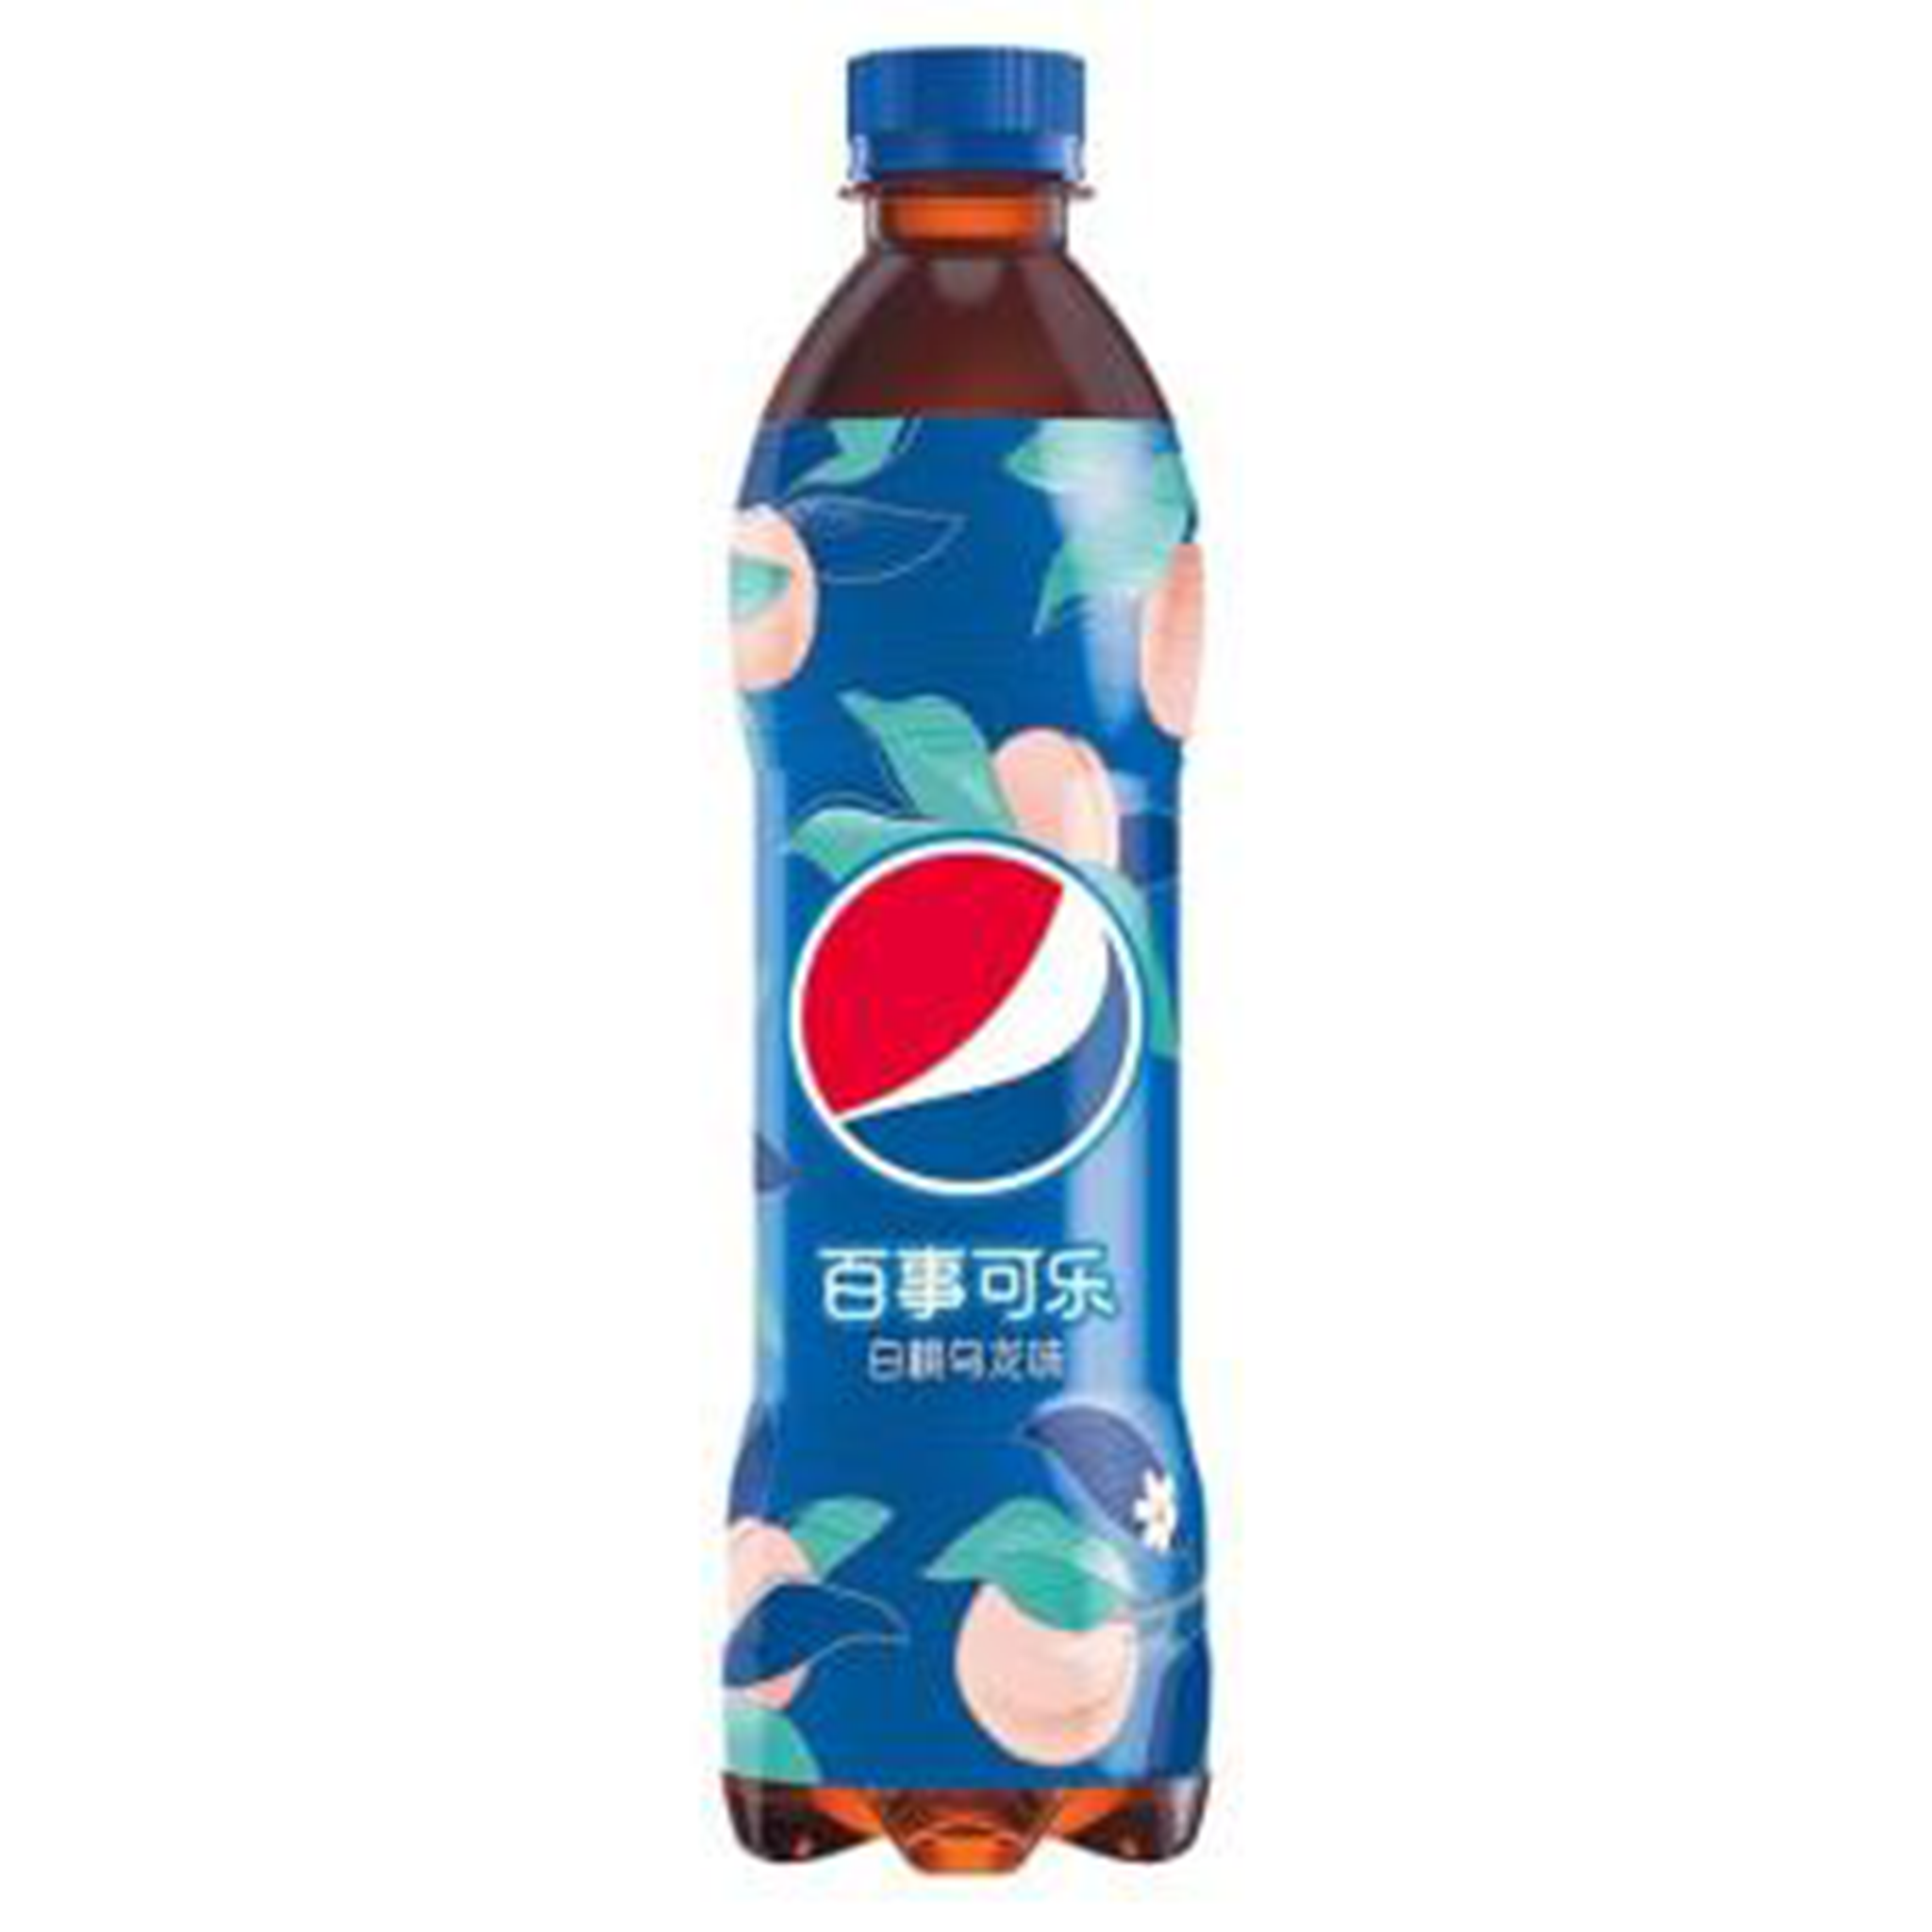 Pepsi White Peach - China